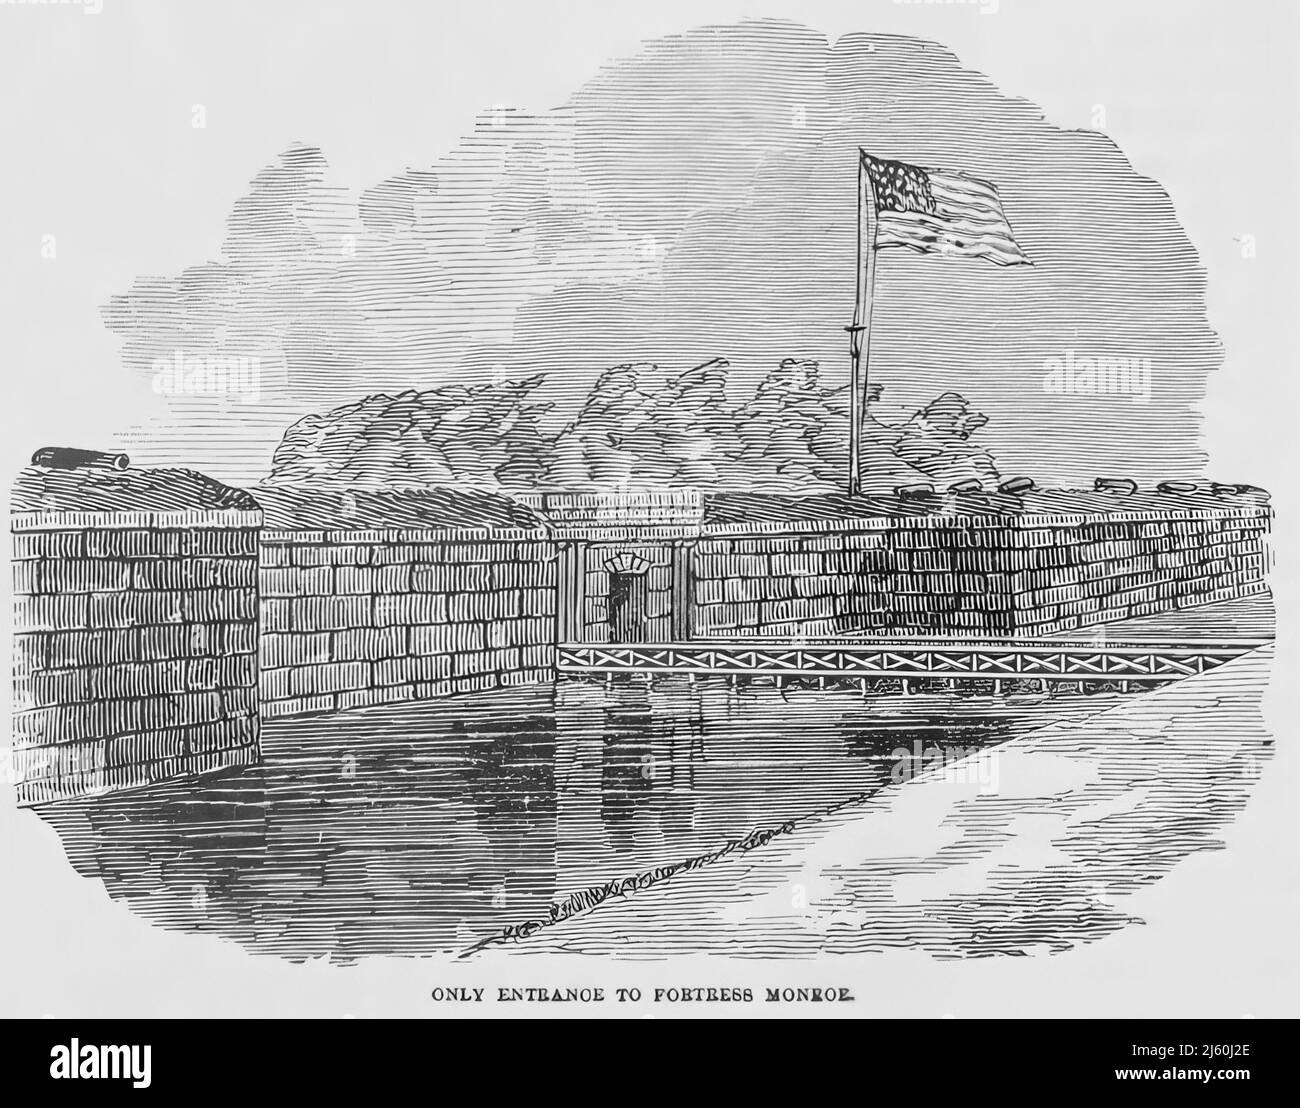 Seule entrée à fort Monroe, dans la guerre de Sécession américaine. illustration du siècle 19th Banque D'Images